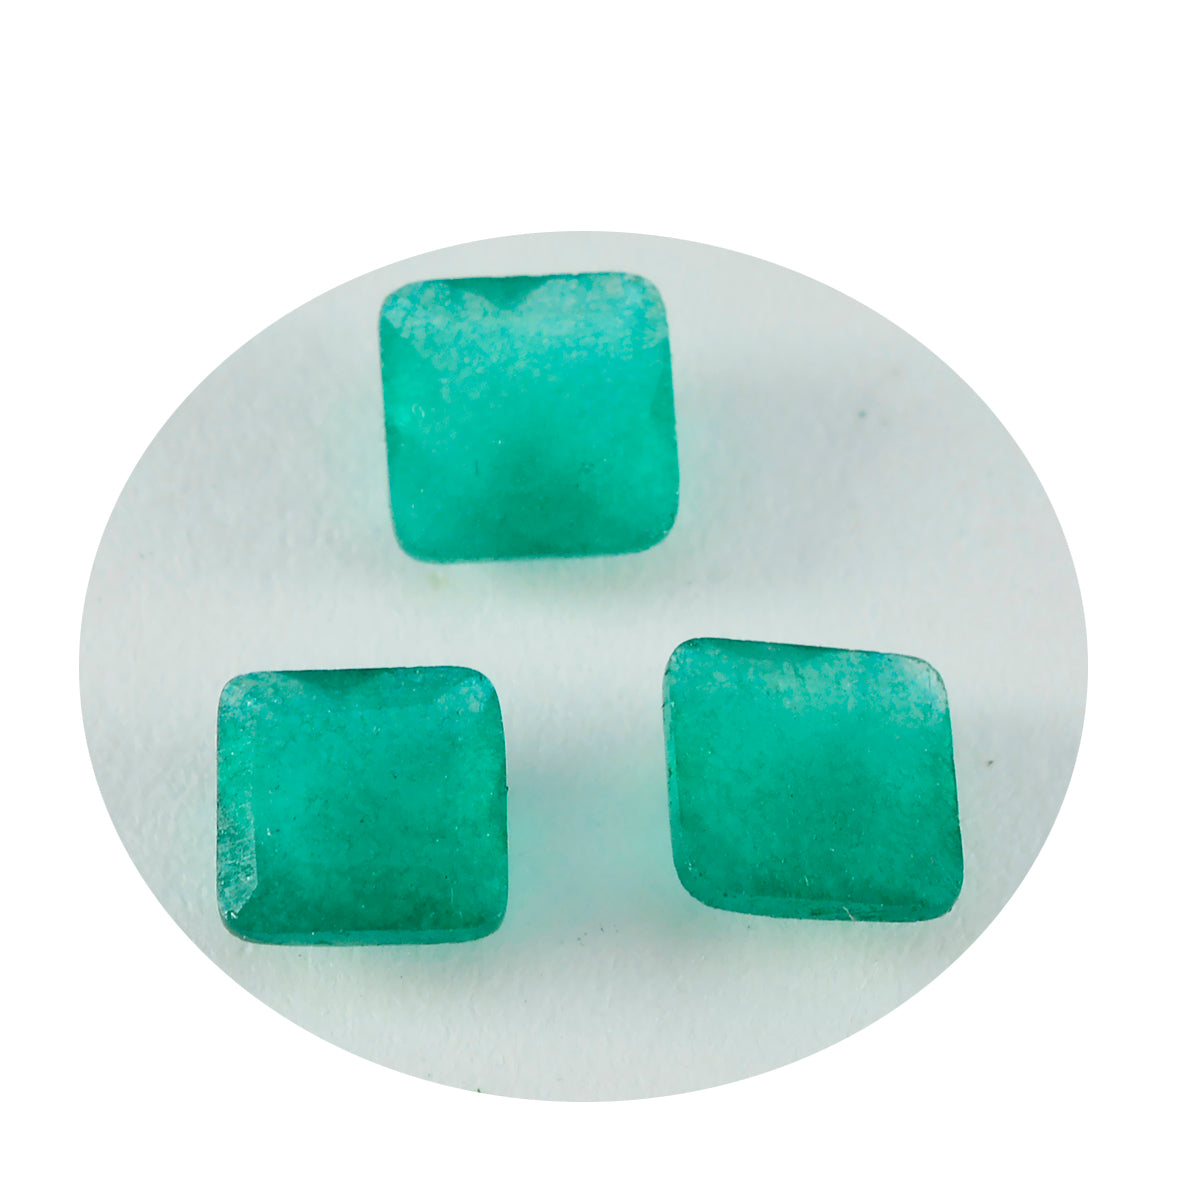 riyogems 1pc リアル グリーン ジャスパー ファセット 13x13 mm 正方形の形状 AA 品質の宝石